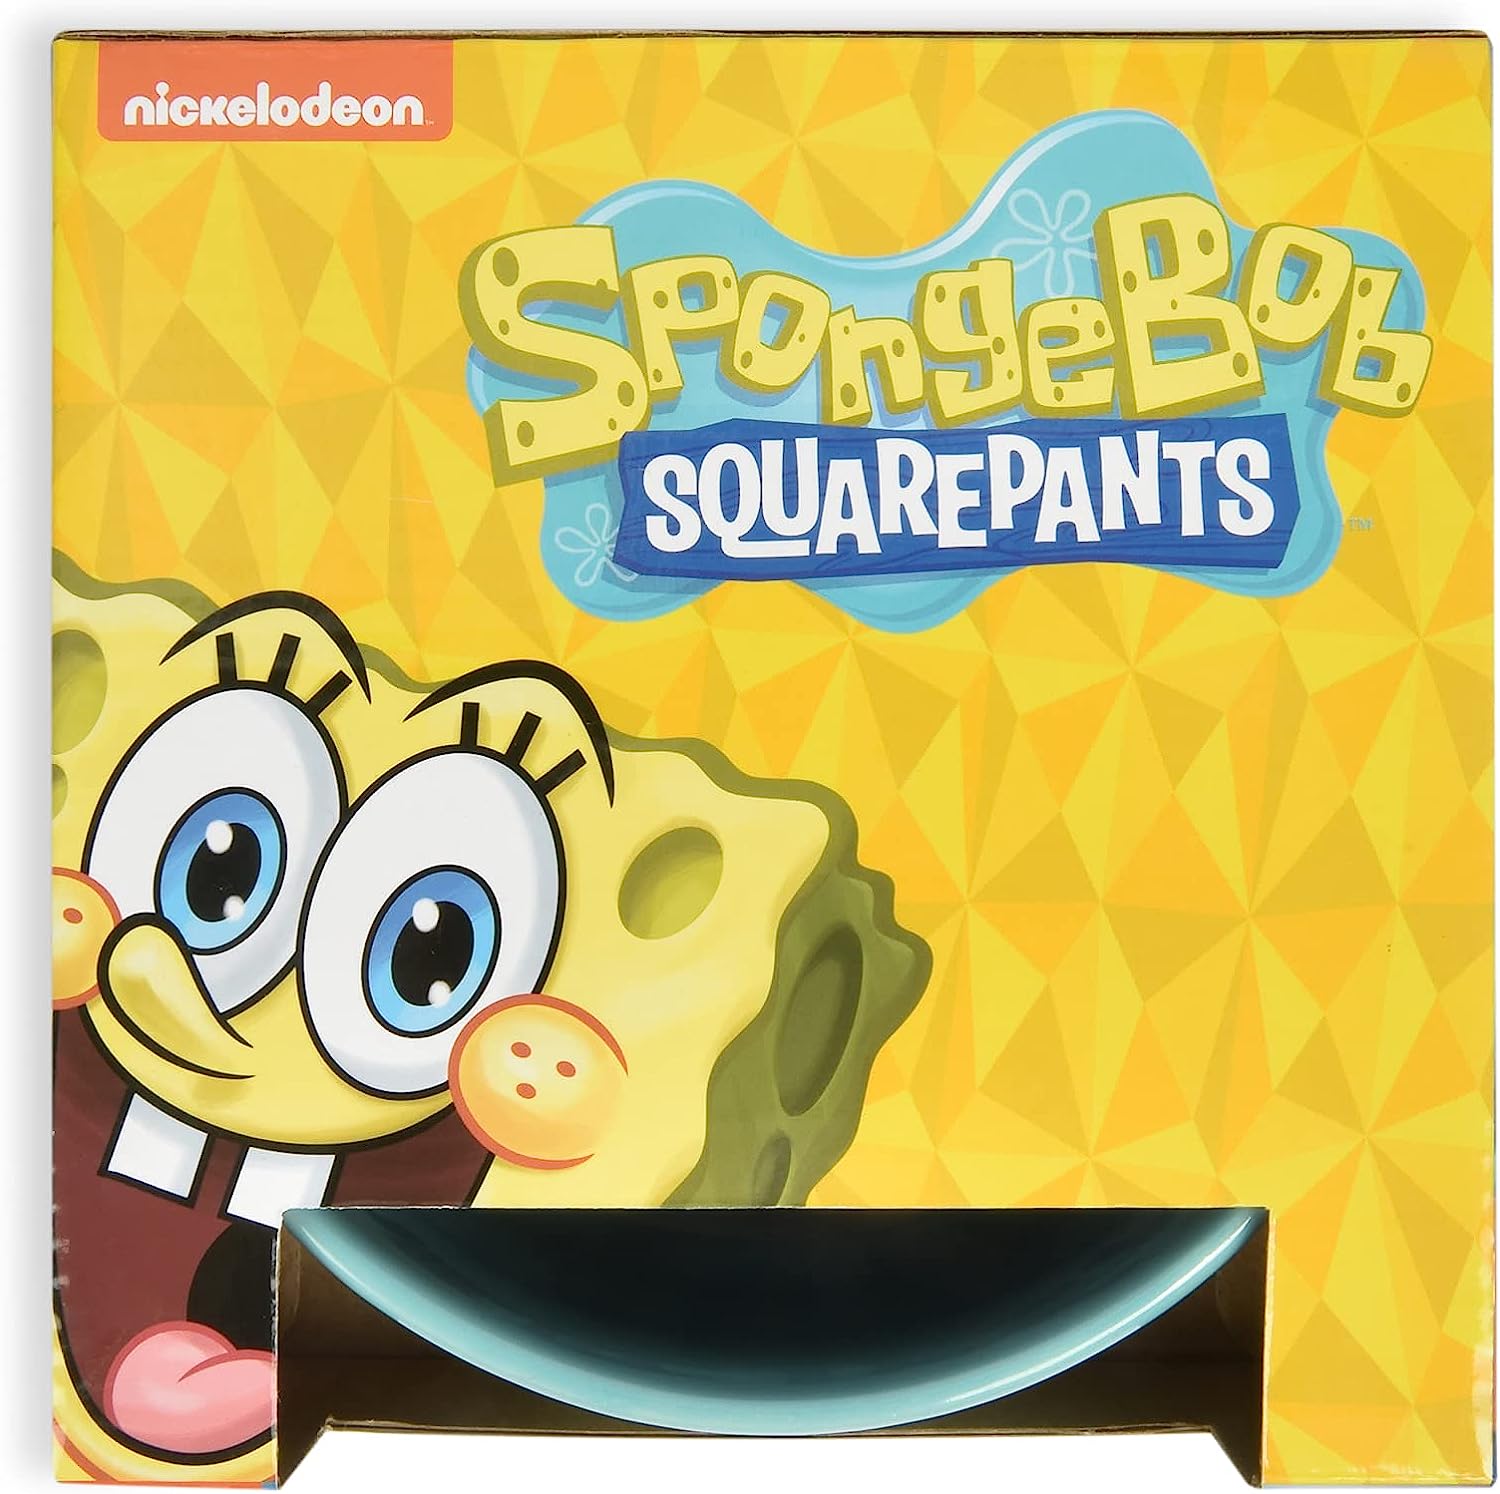 SpongeBob SquarePants for Pets Can I Be Excused 海綿寶寶飯碗